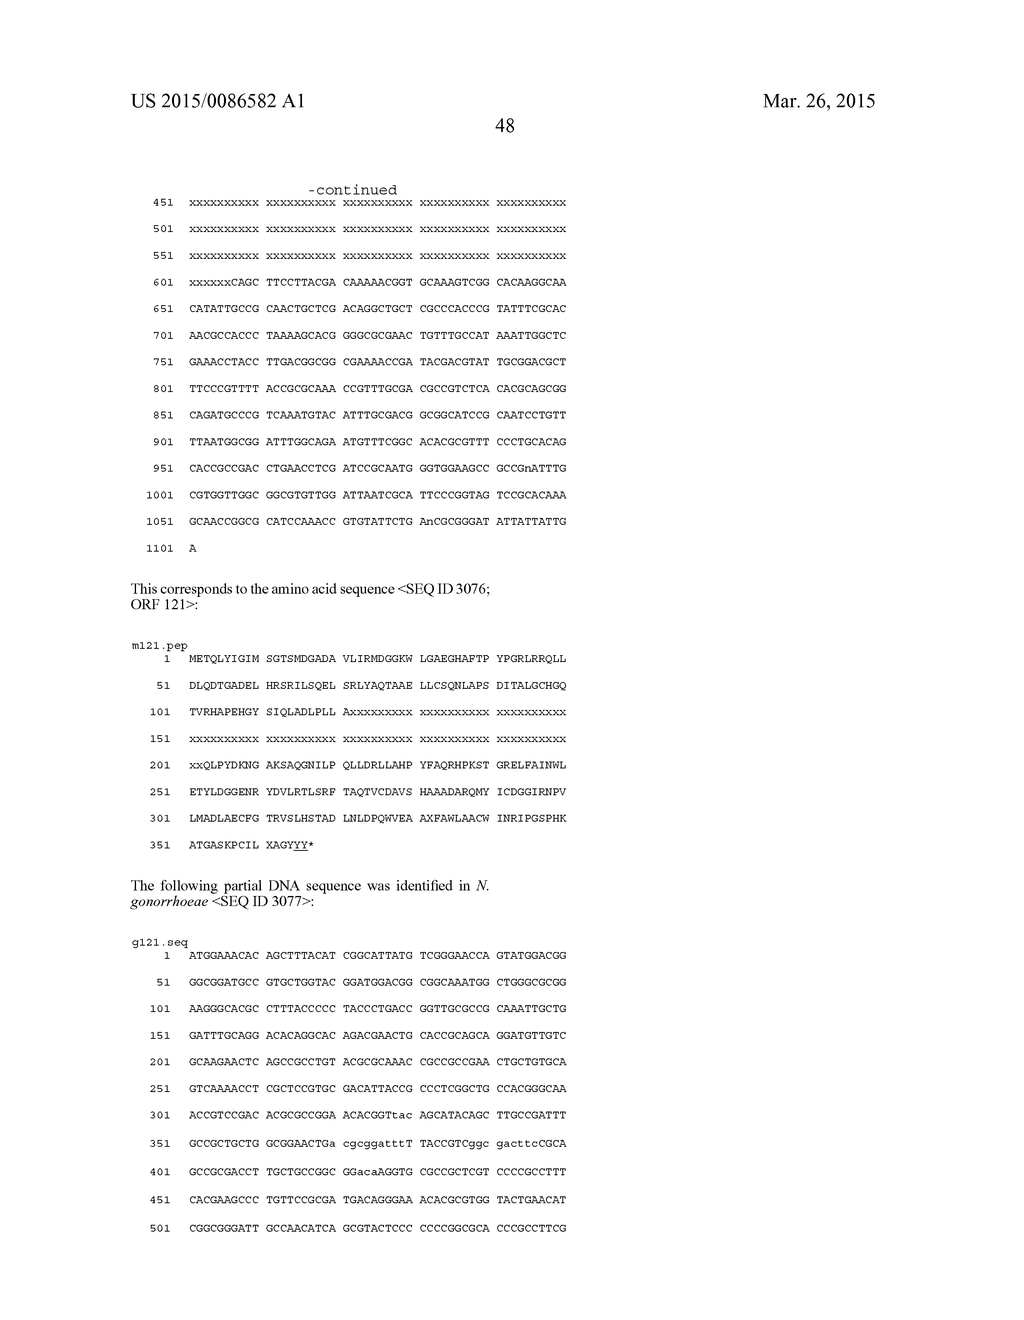 NEISSERIA MENINGITIDIS ANTIGENS AND COMPOSITIONS - diagram, schematic, and image 80